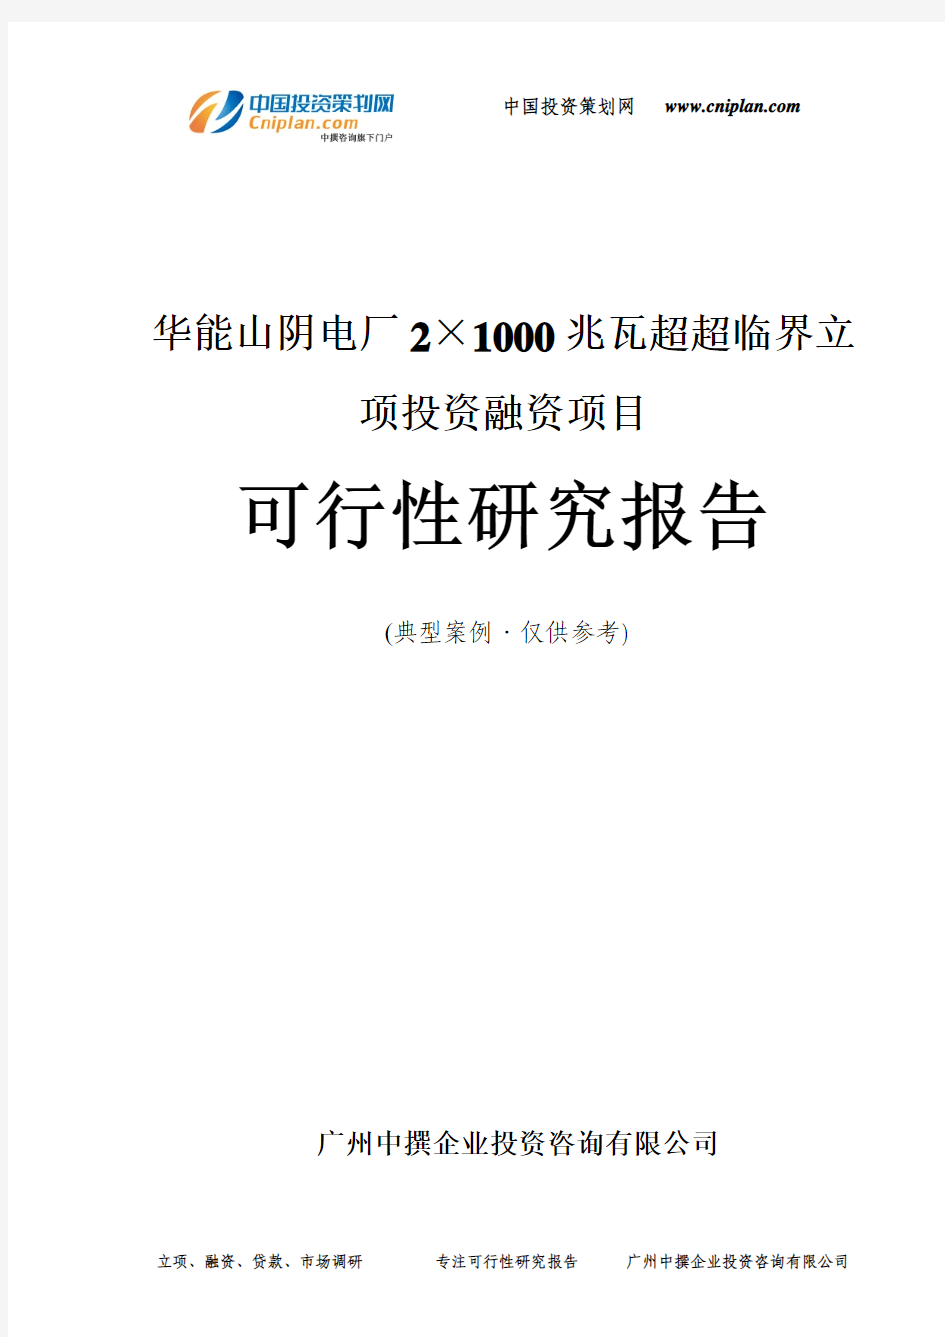 华能山阴电厂2×1000兆瓦超超临界融资投资立项项目可行性研究报告(中撰咨询)